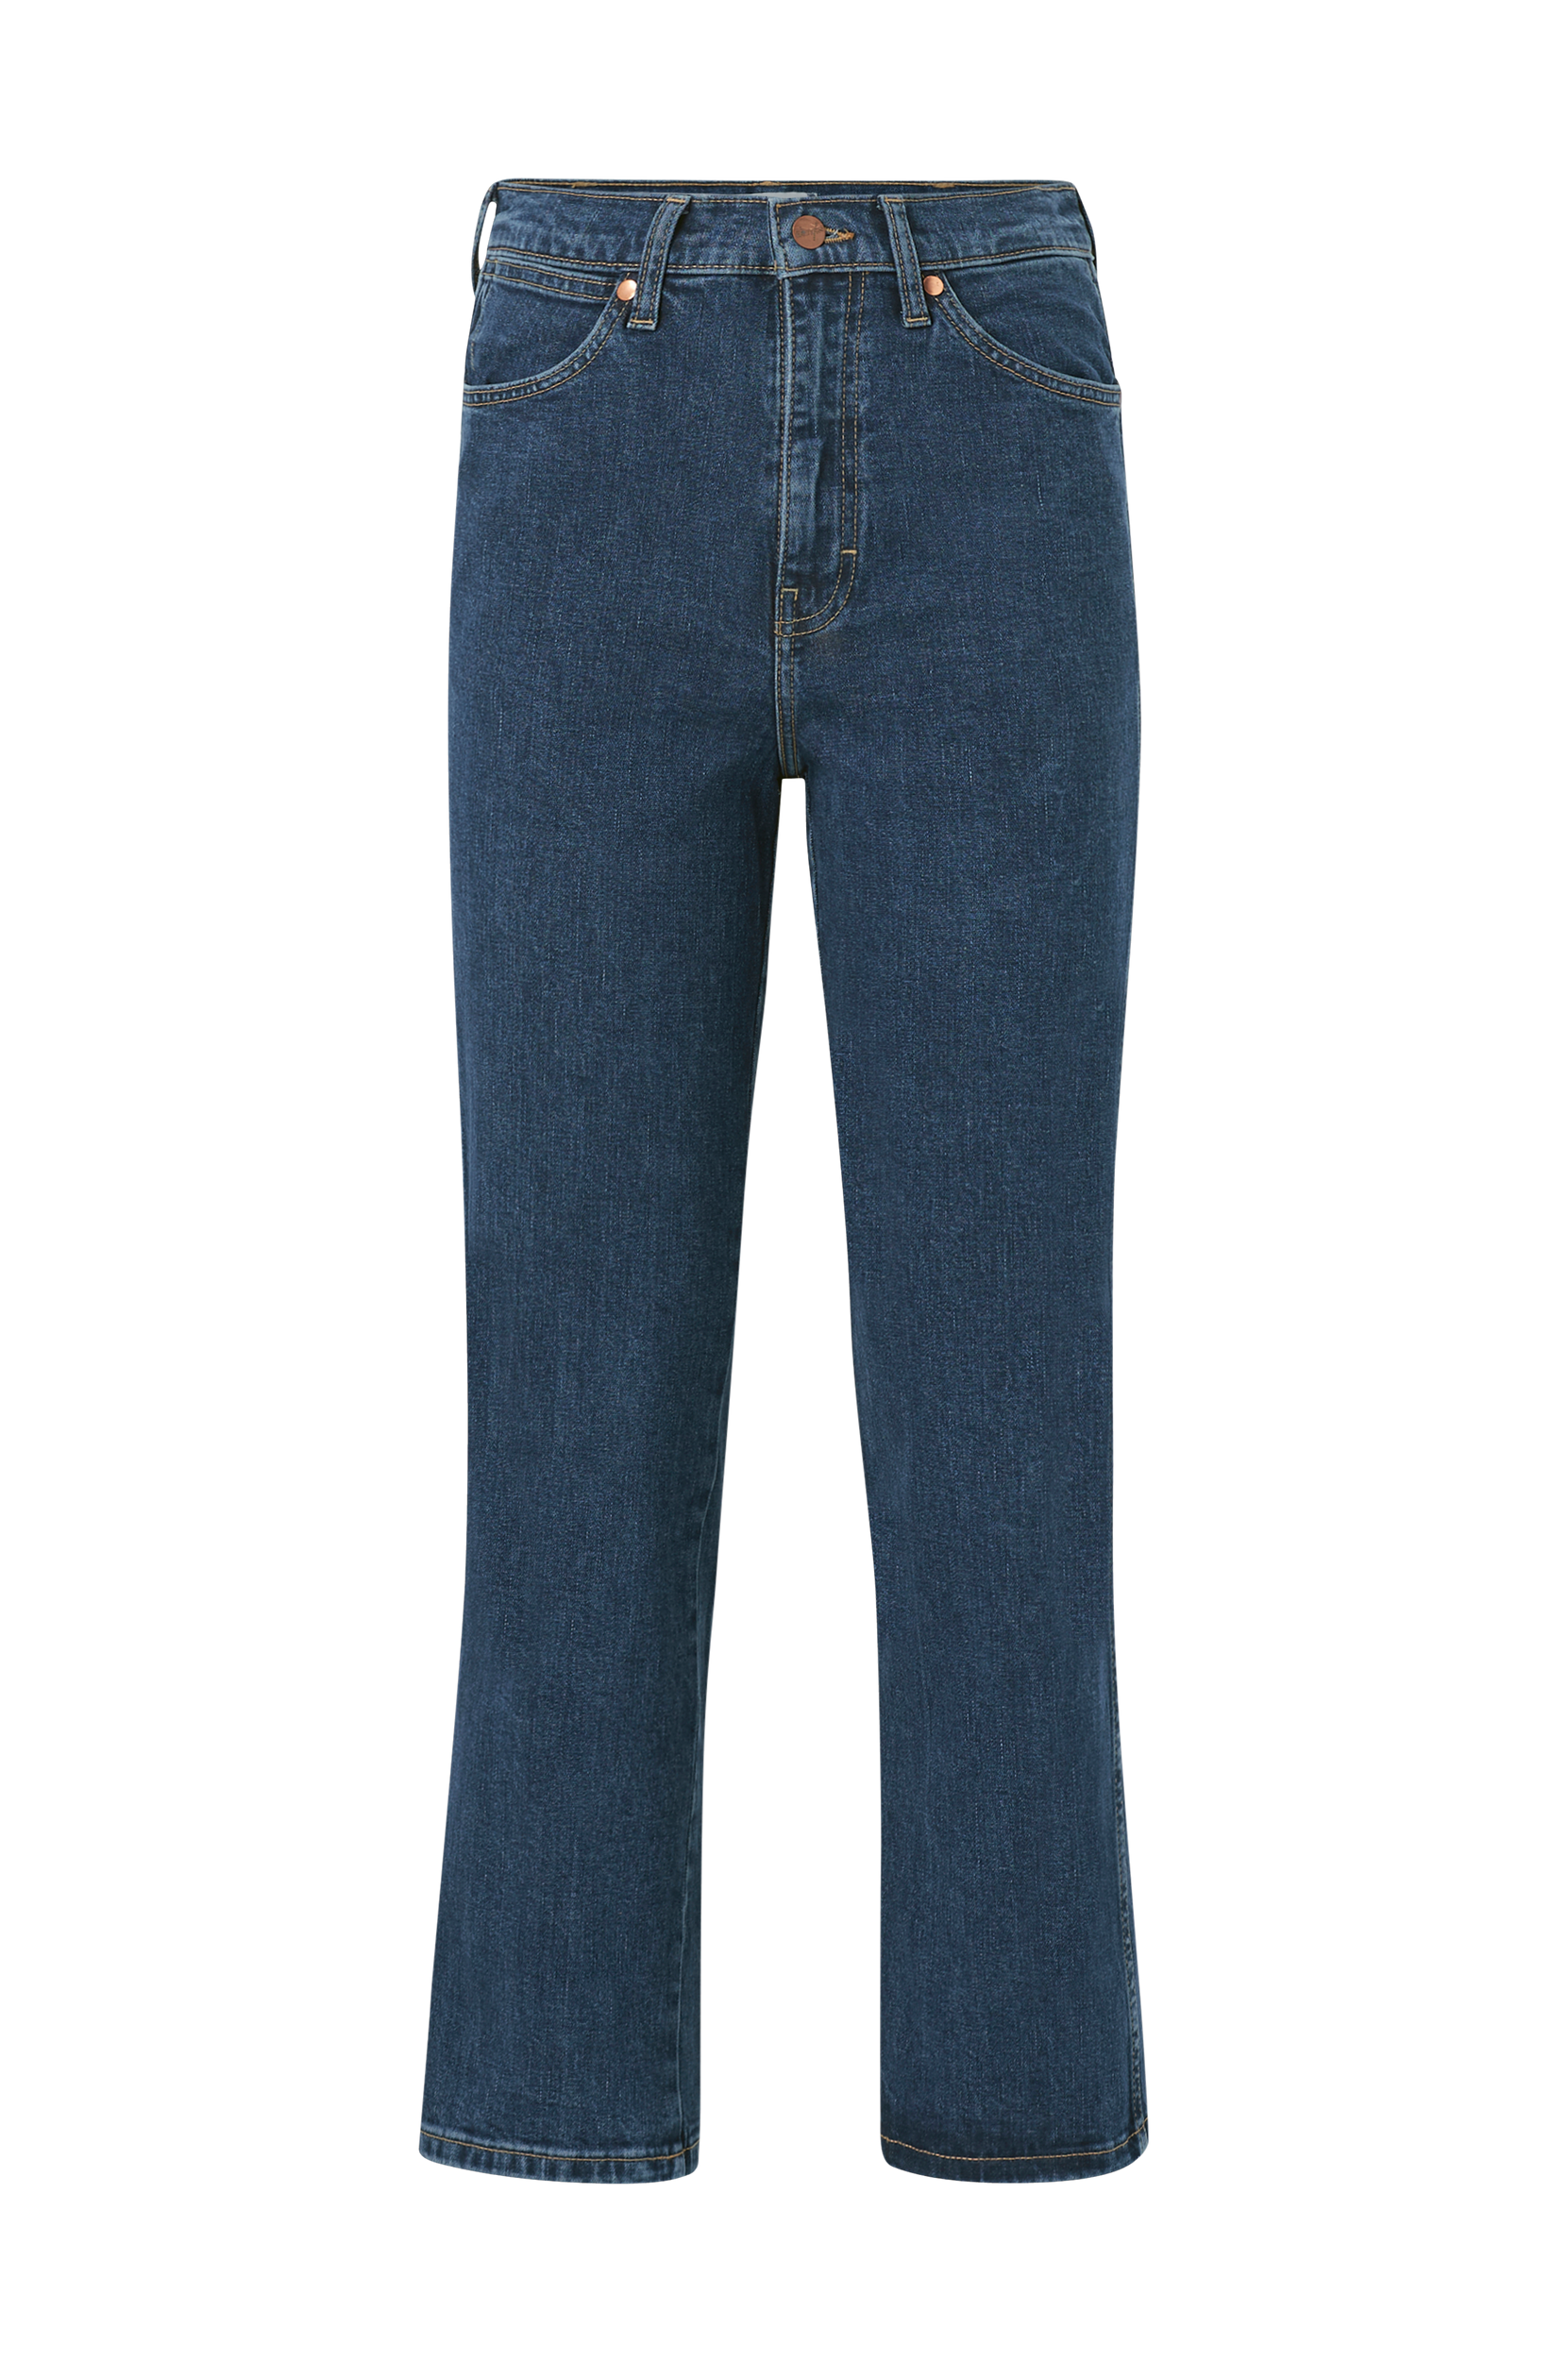 Wrangler - Jeans Wild West High Rise Straight - Blå - W28/L34